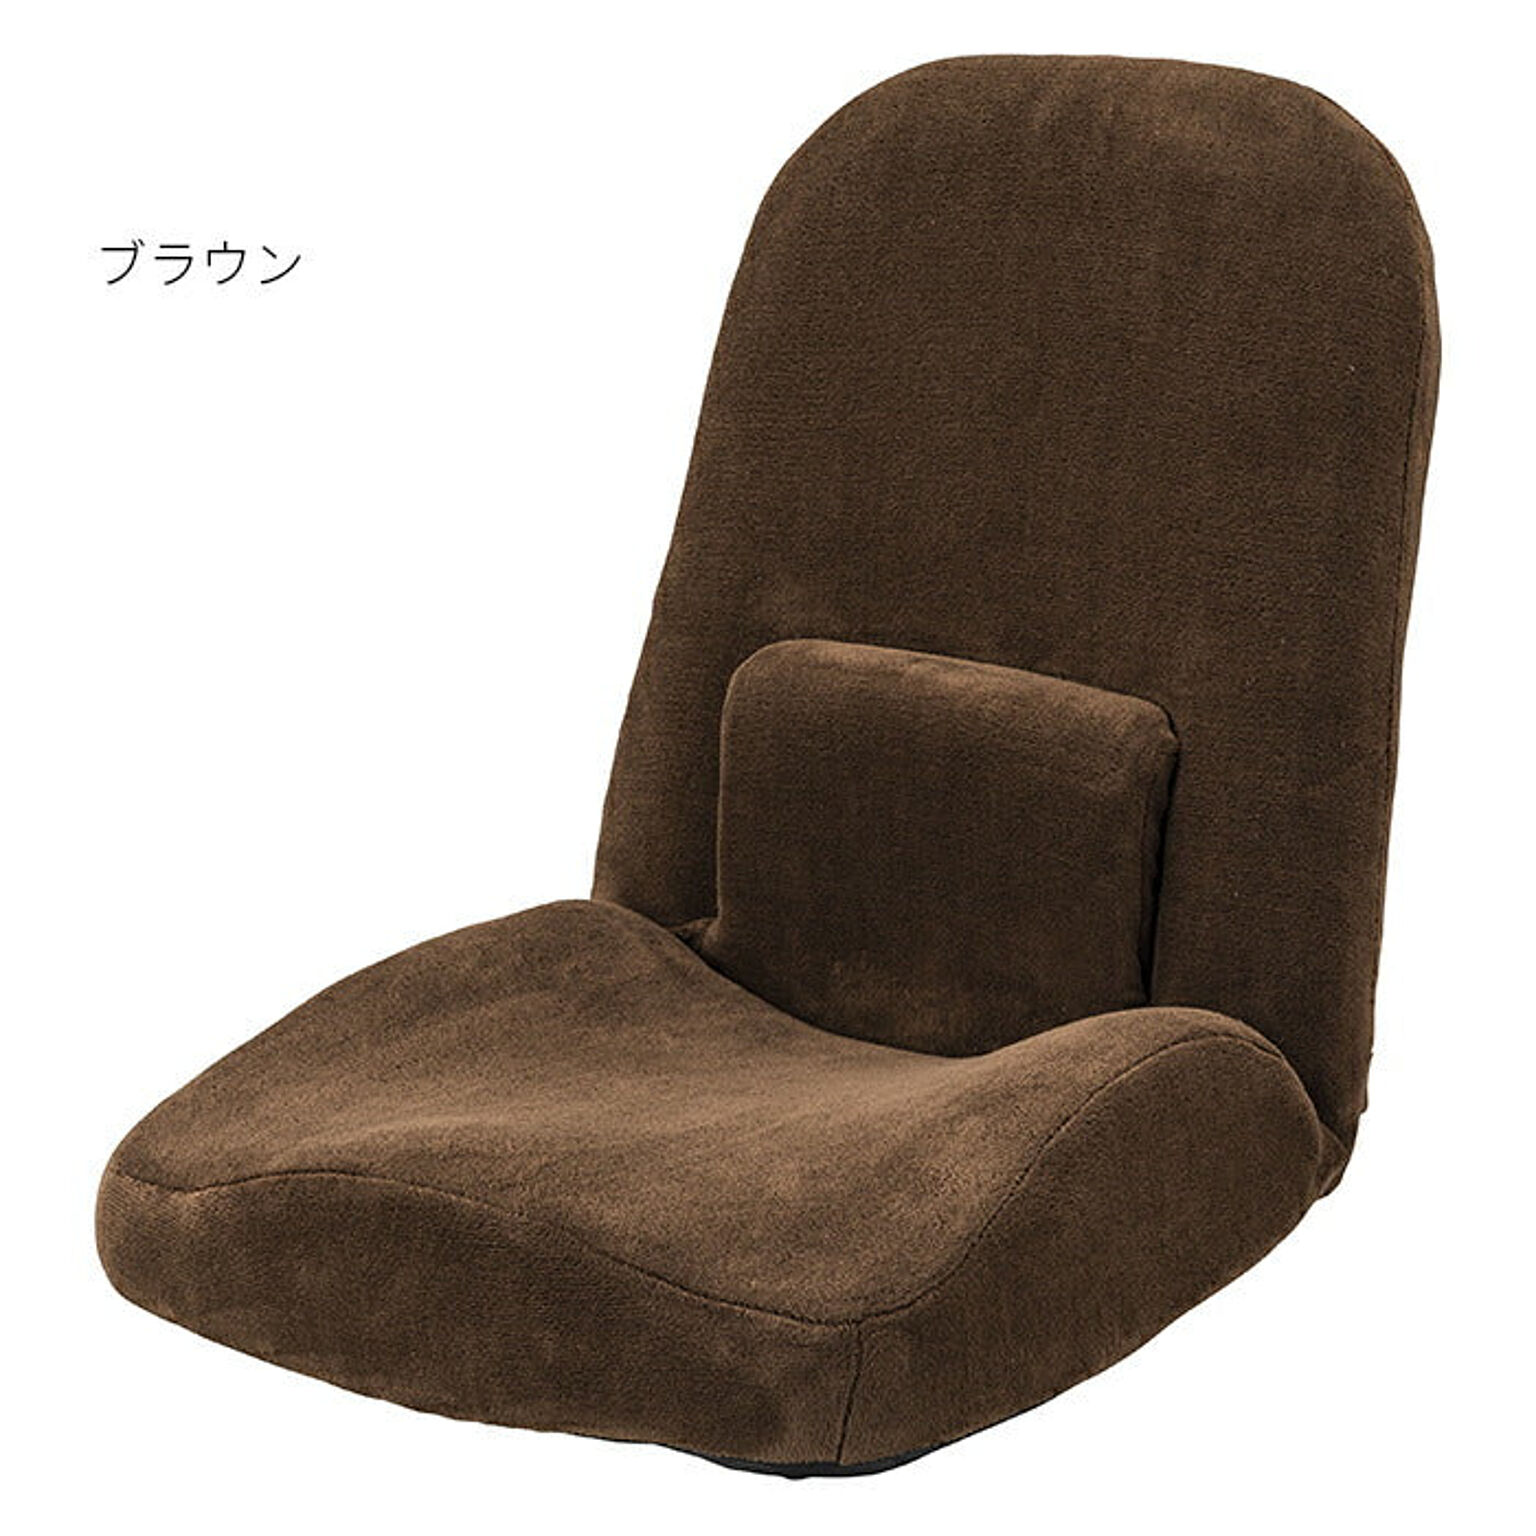 東谷 完成品 座椅子 RKC-172 ブラウン 幅47x奥行103x高さ58cm